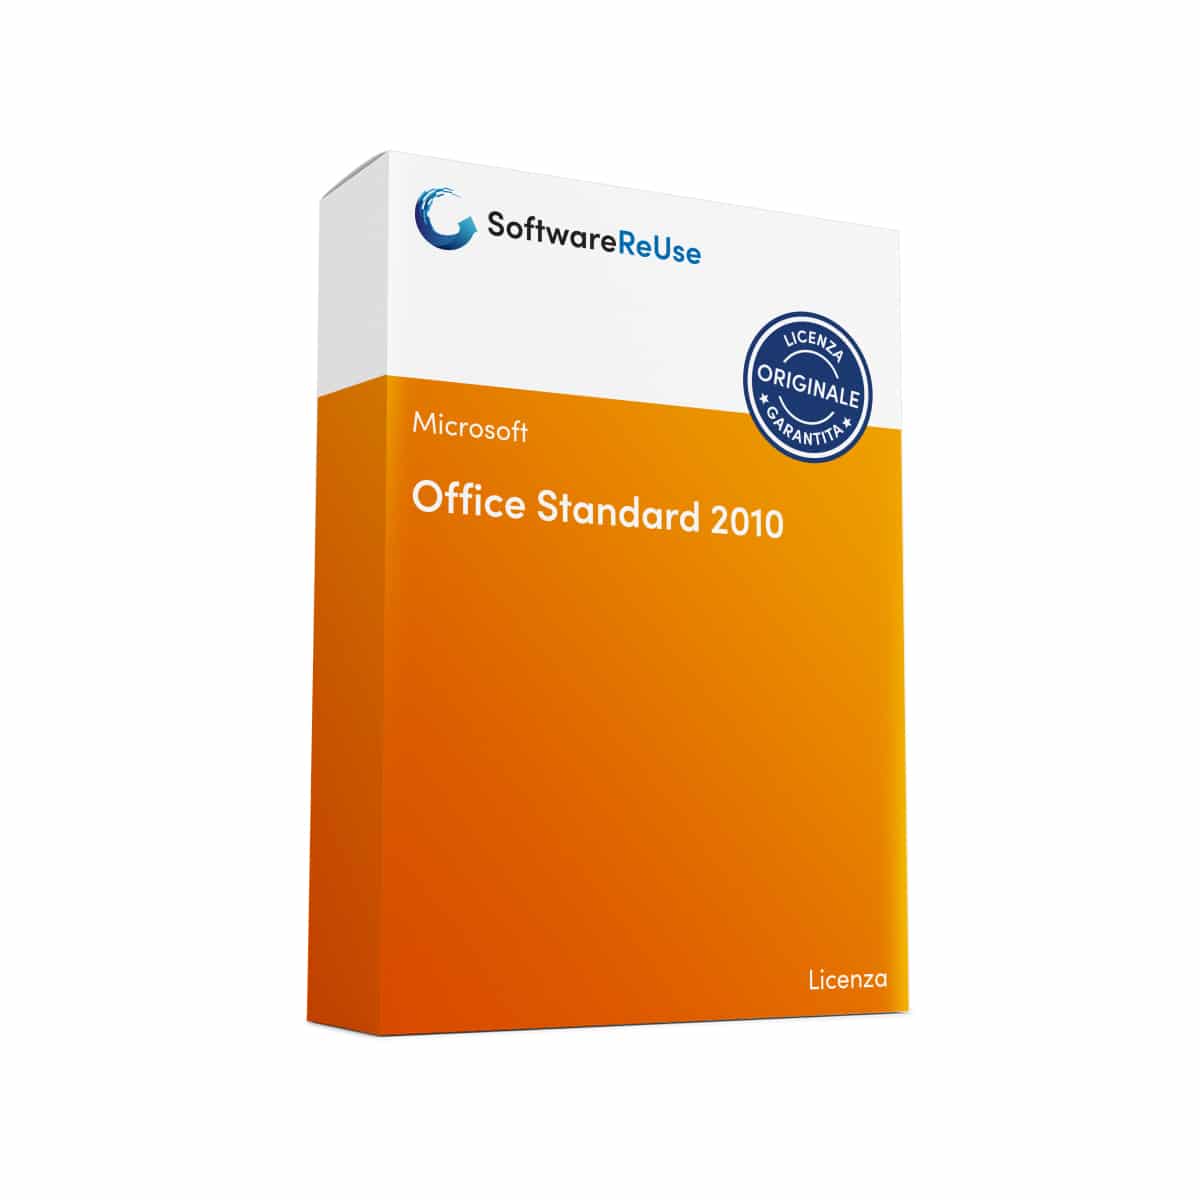 Office Standard 2010 – IT